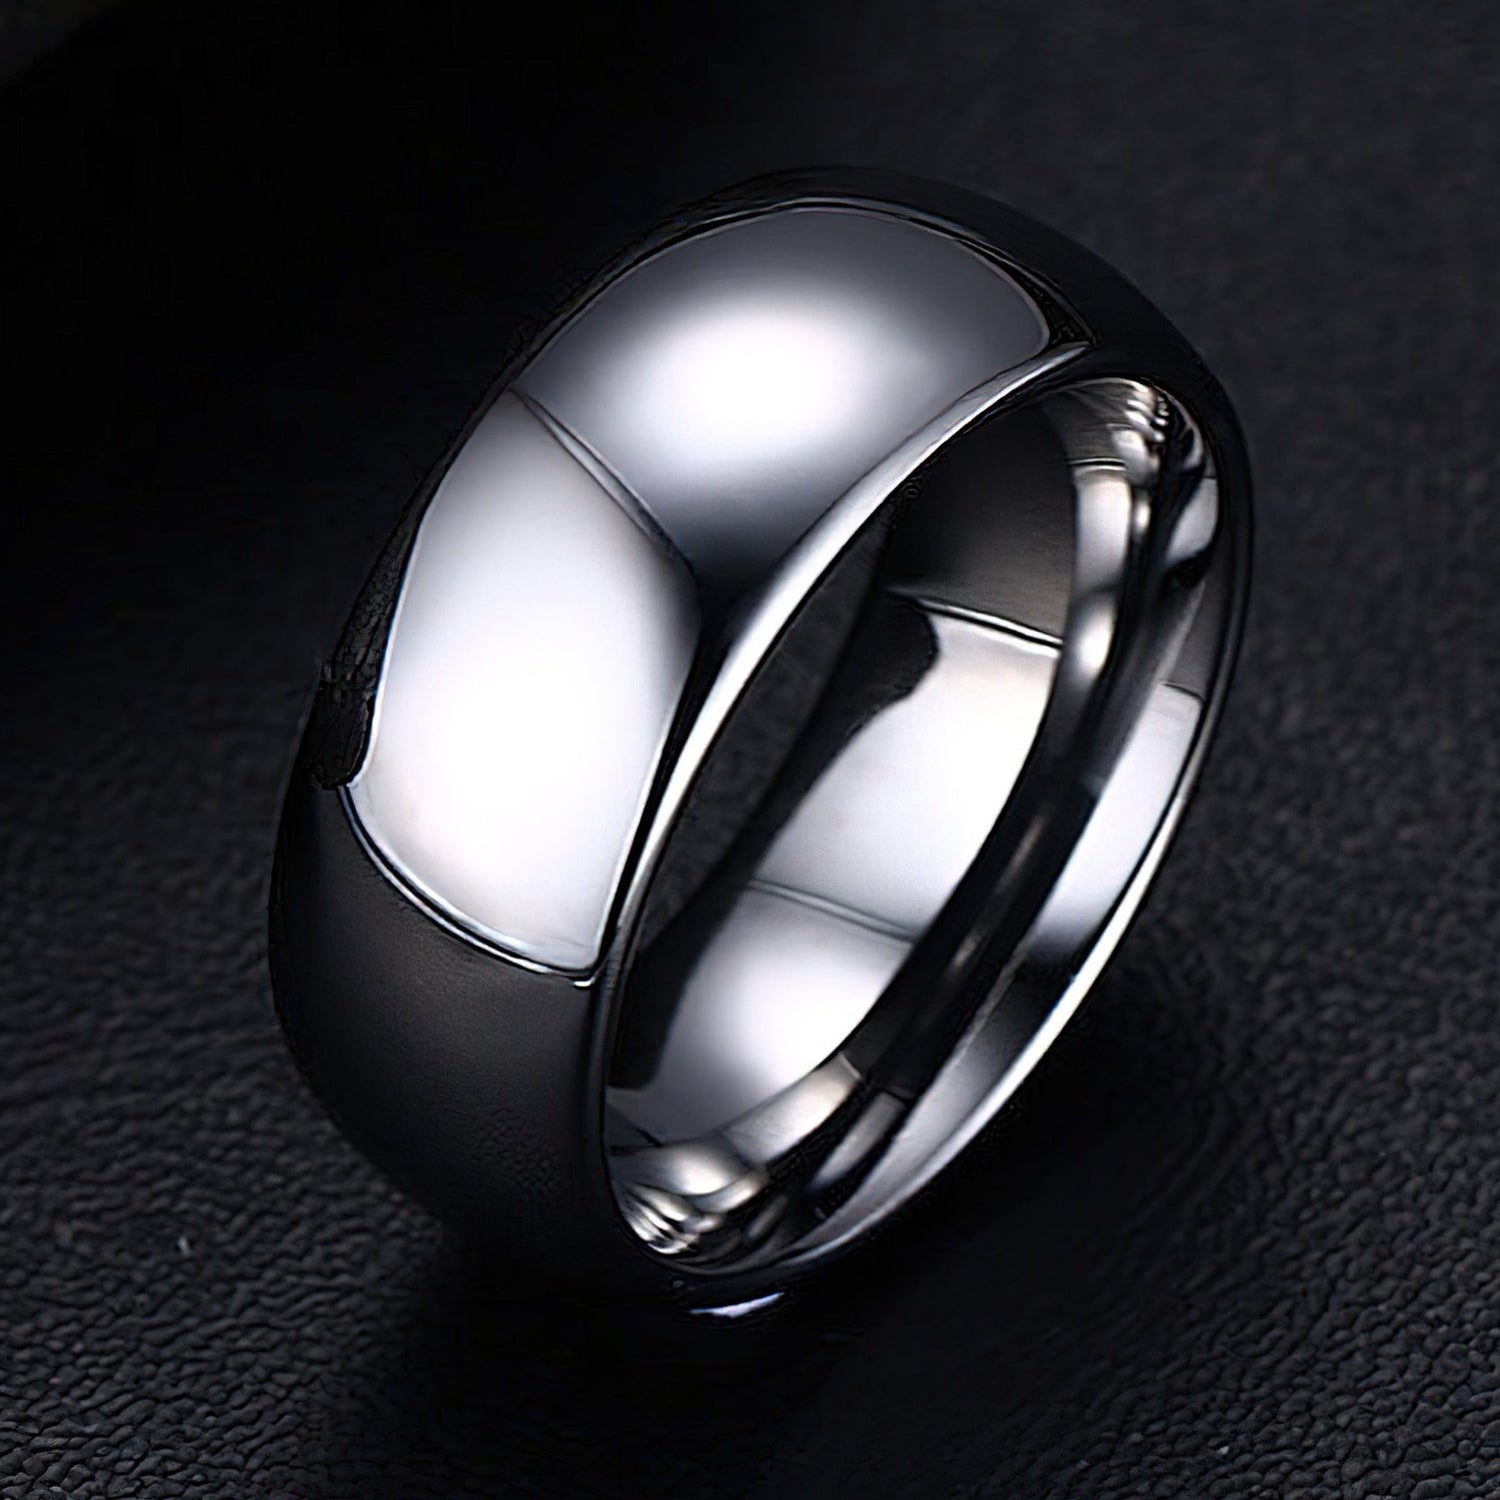 Silver Tungsten Carbide Wedding Ring